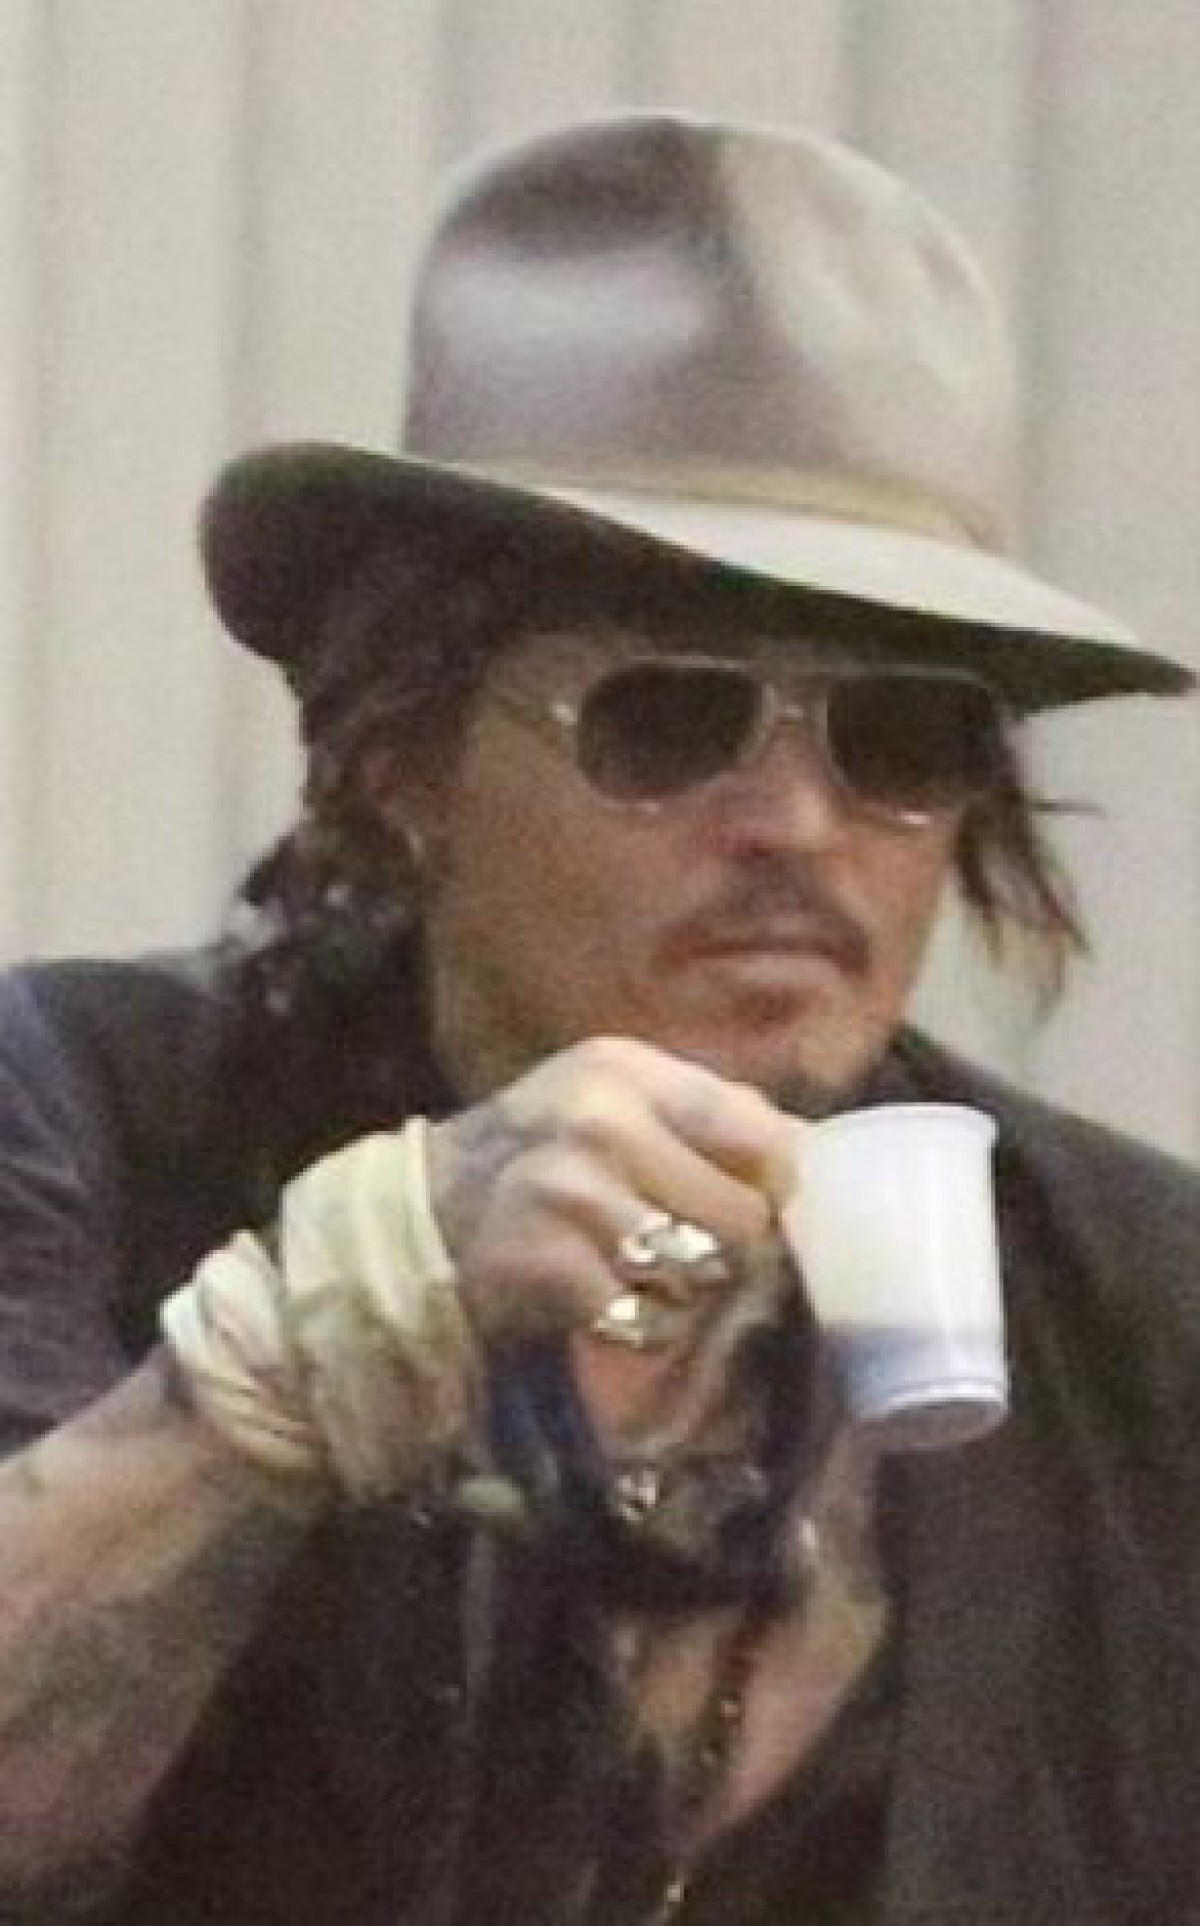 Julgamento de Johnny Depp e Amber Heard chega ao fim nesta sexta, Celebridades